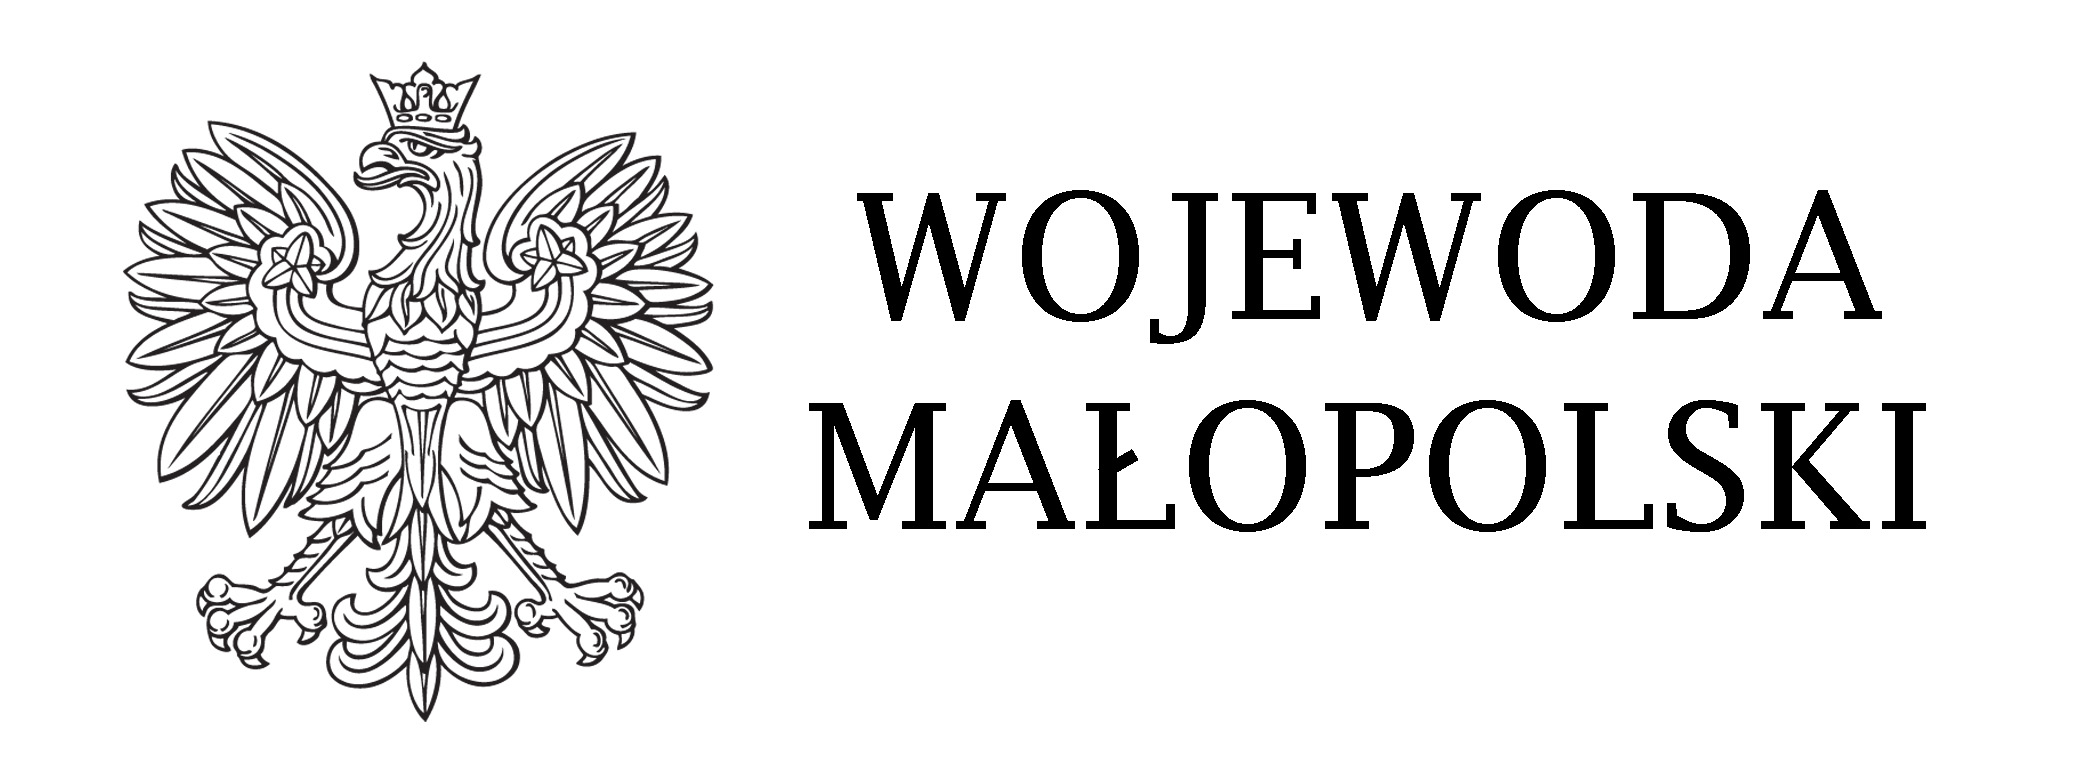 logo wojewody kontrolne